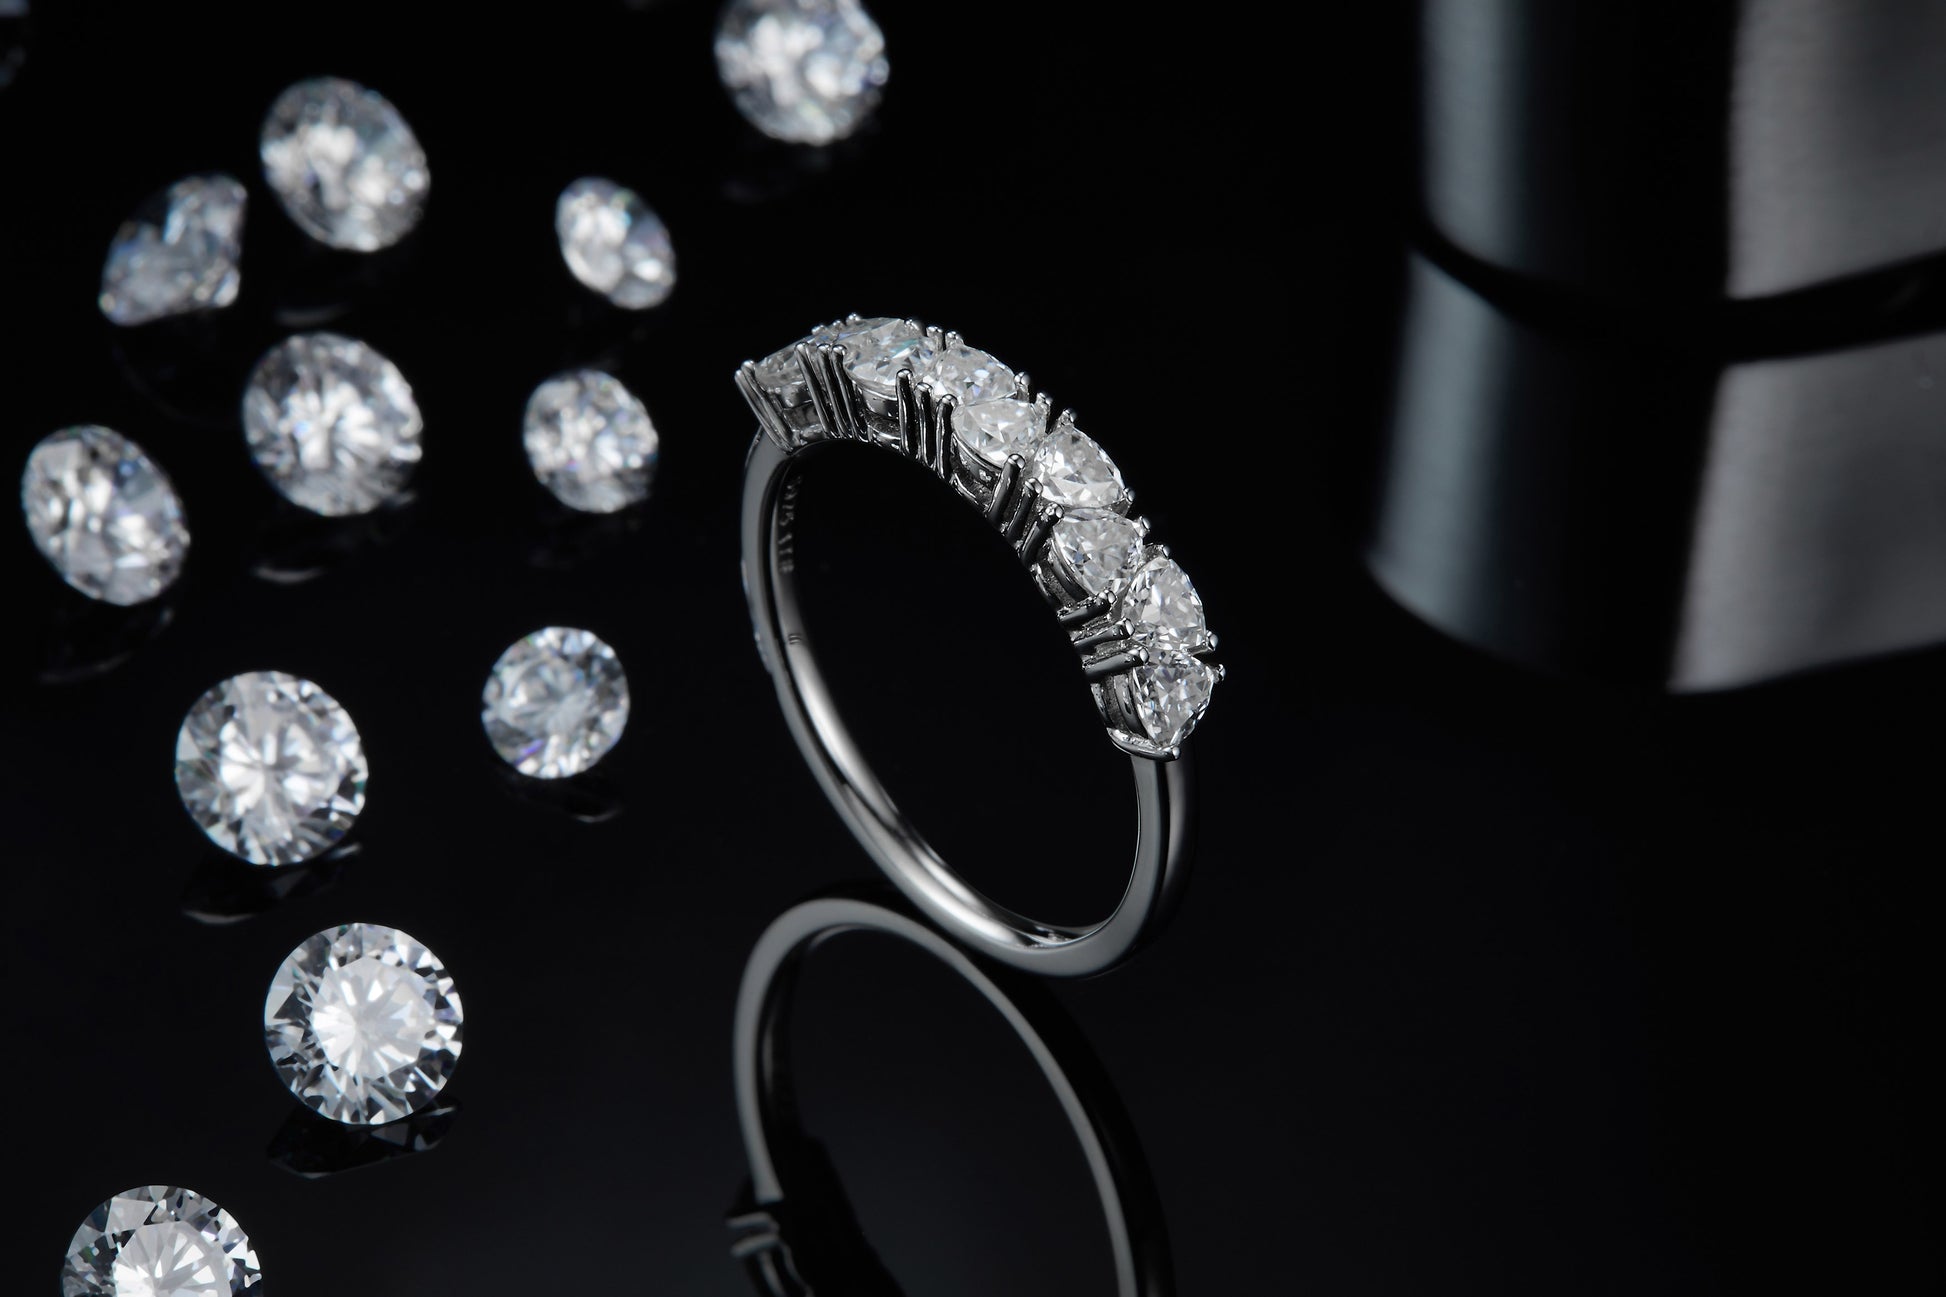 A silver trillion cut half eternity wedding ring.